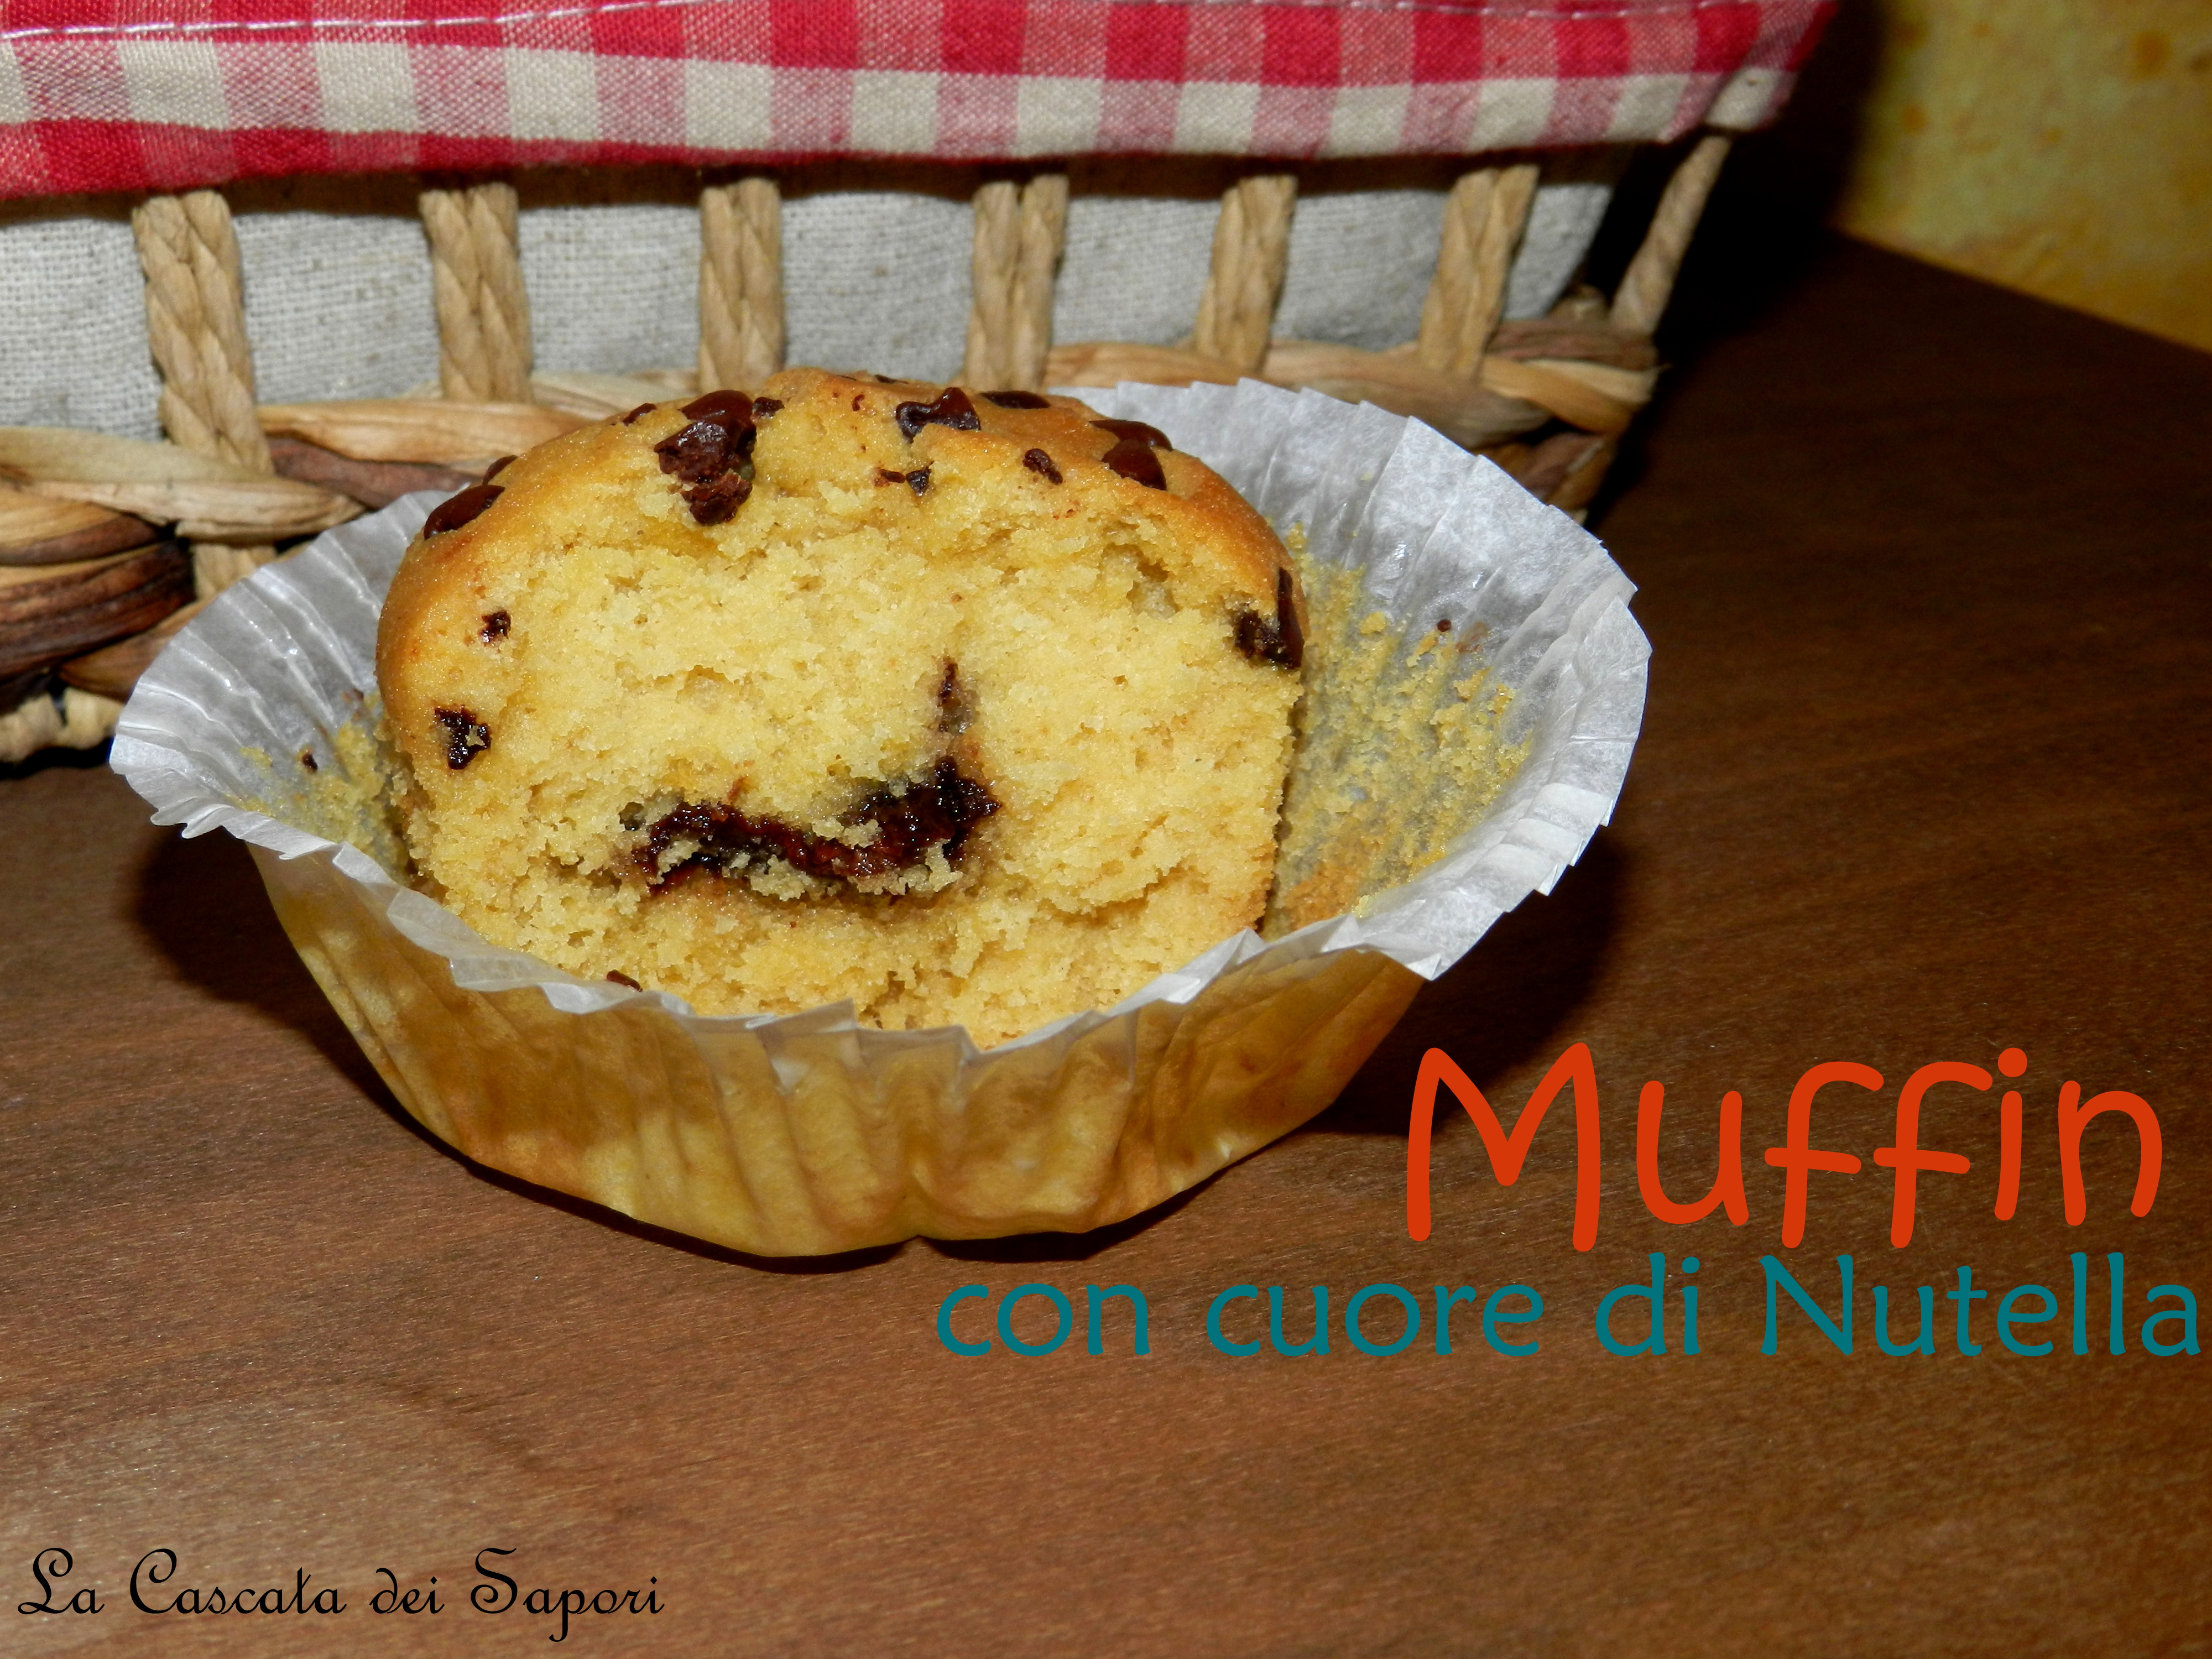 Muffins-con-cuori-multi-gusti